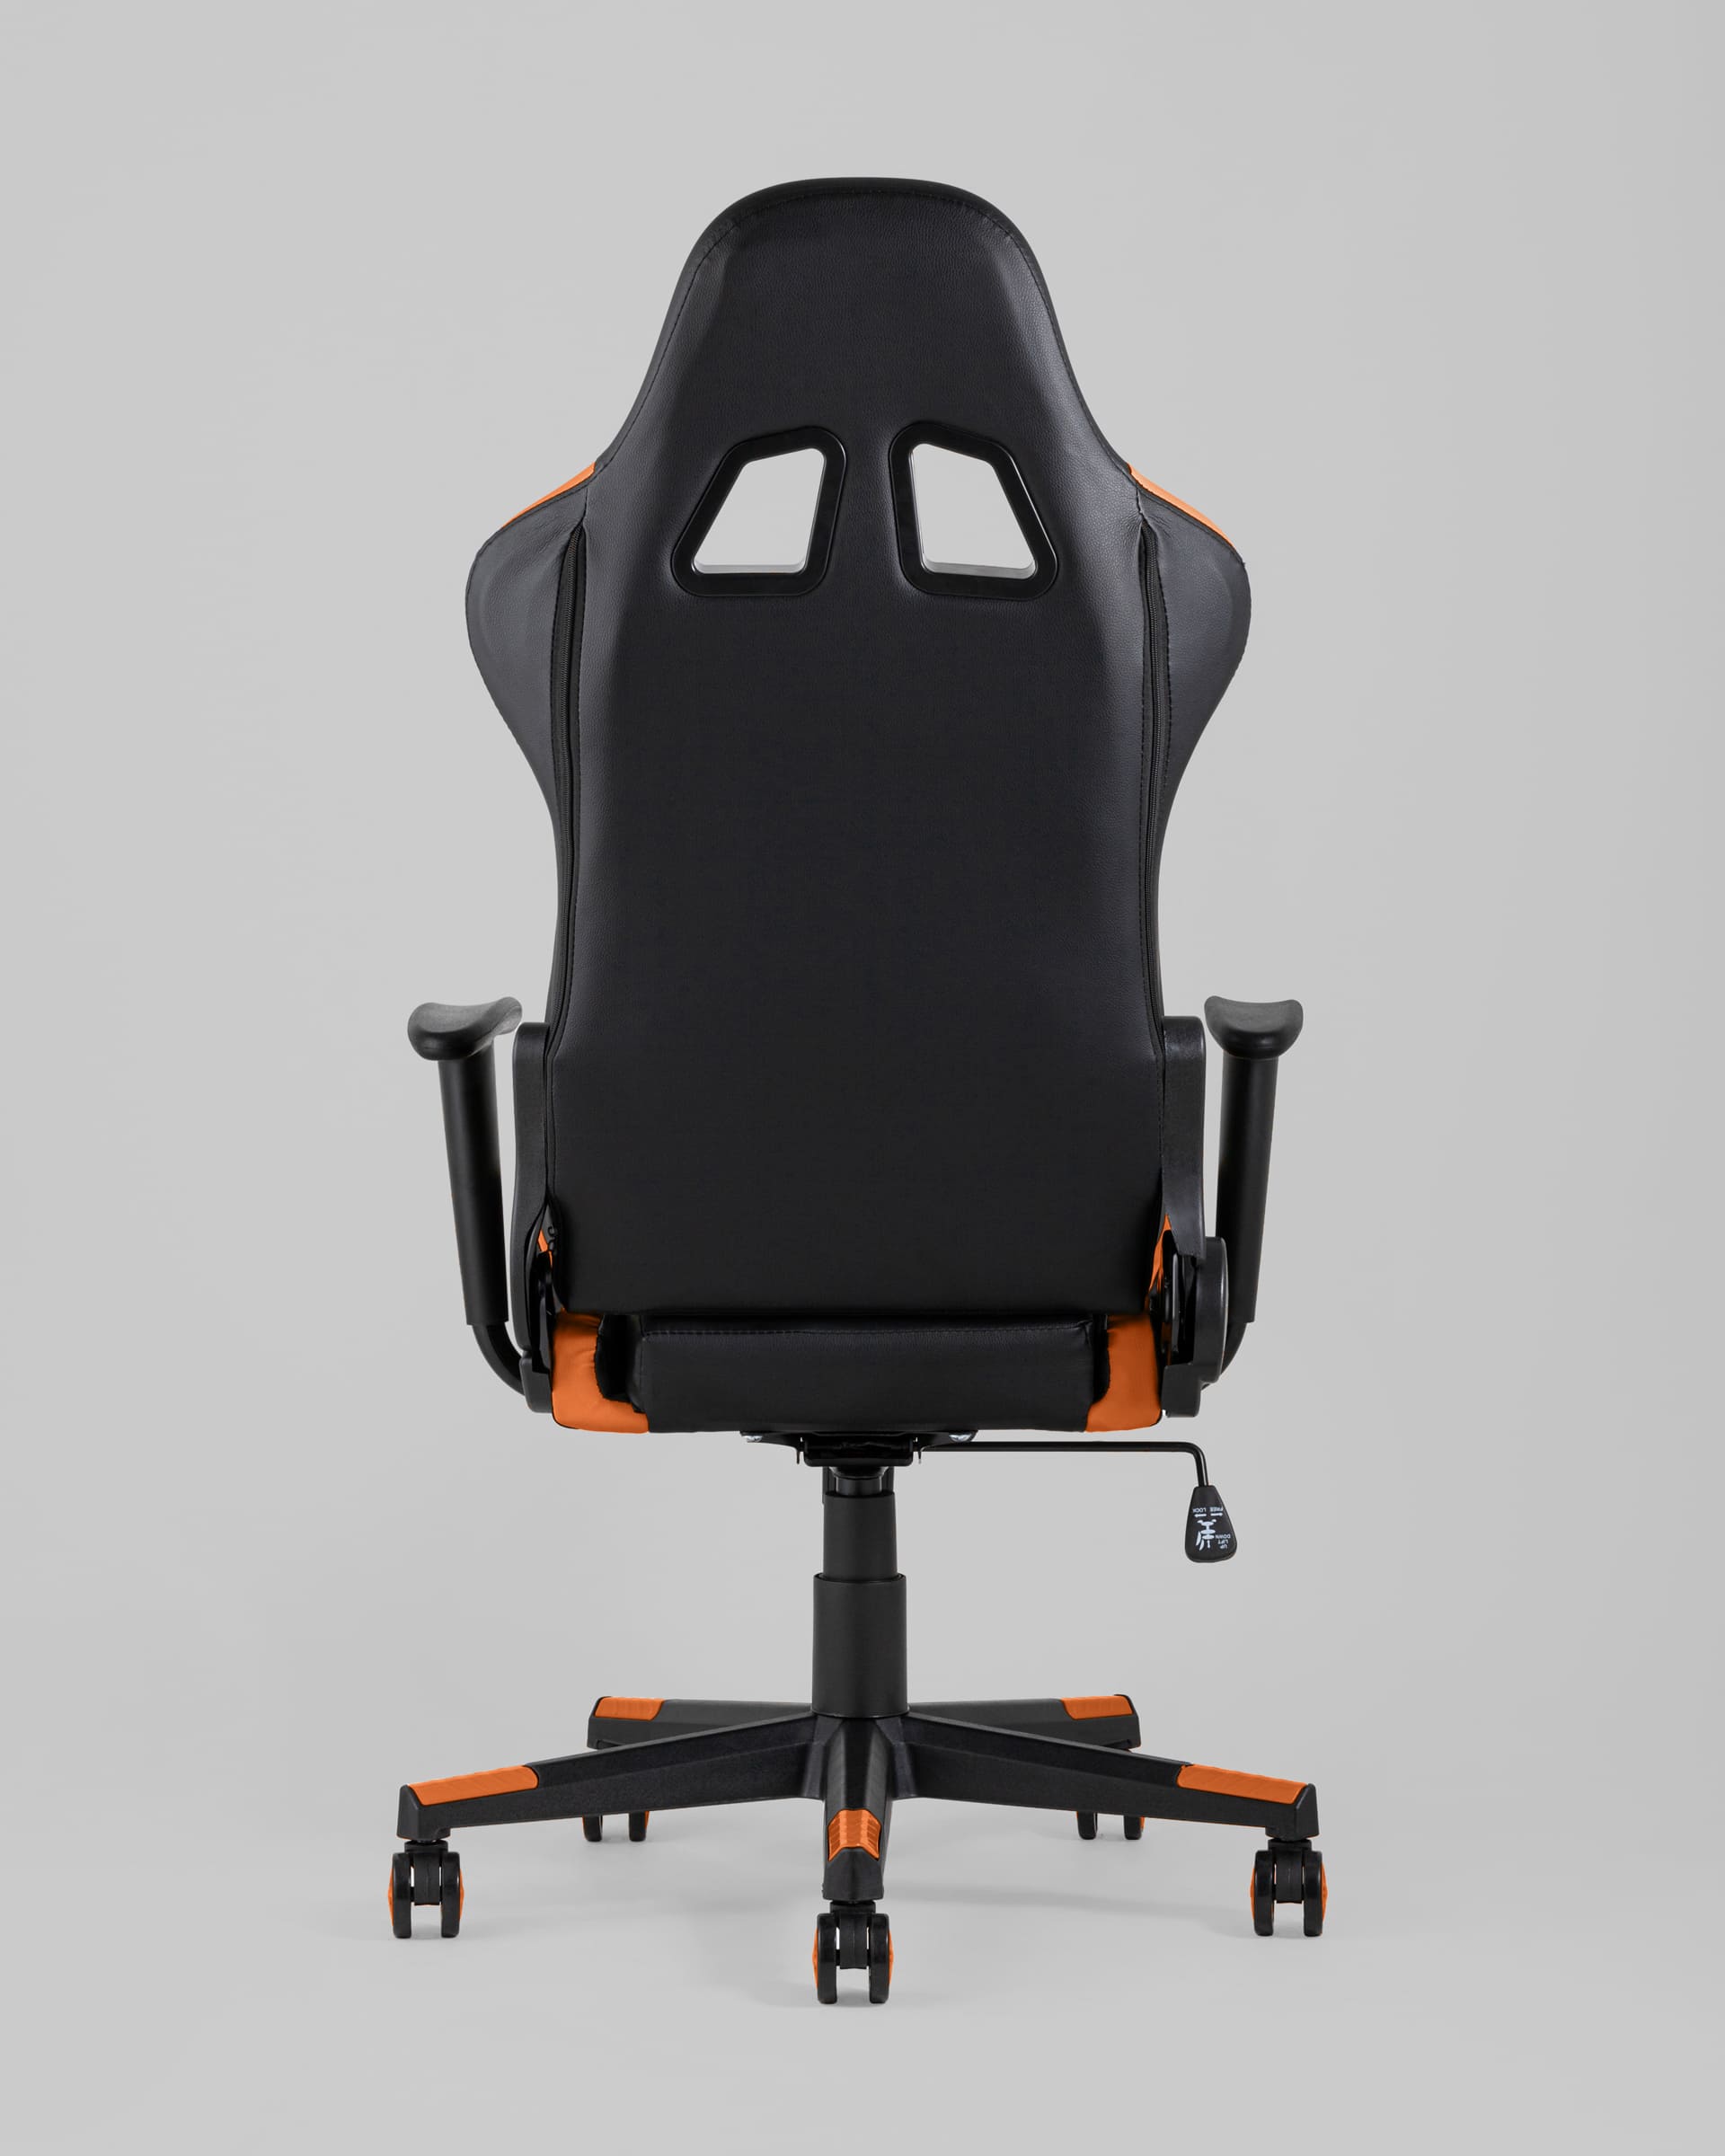 Компьютерное кресло детское оранжевое